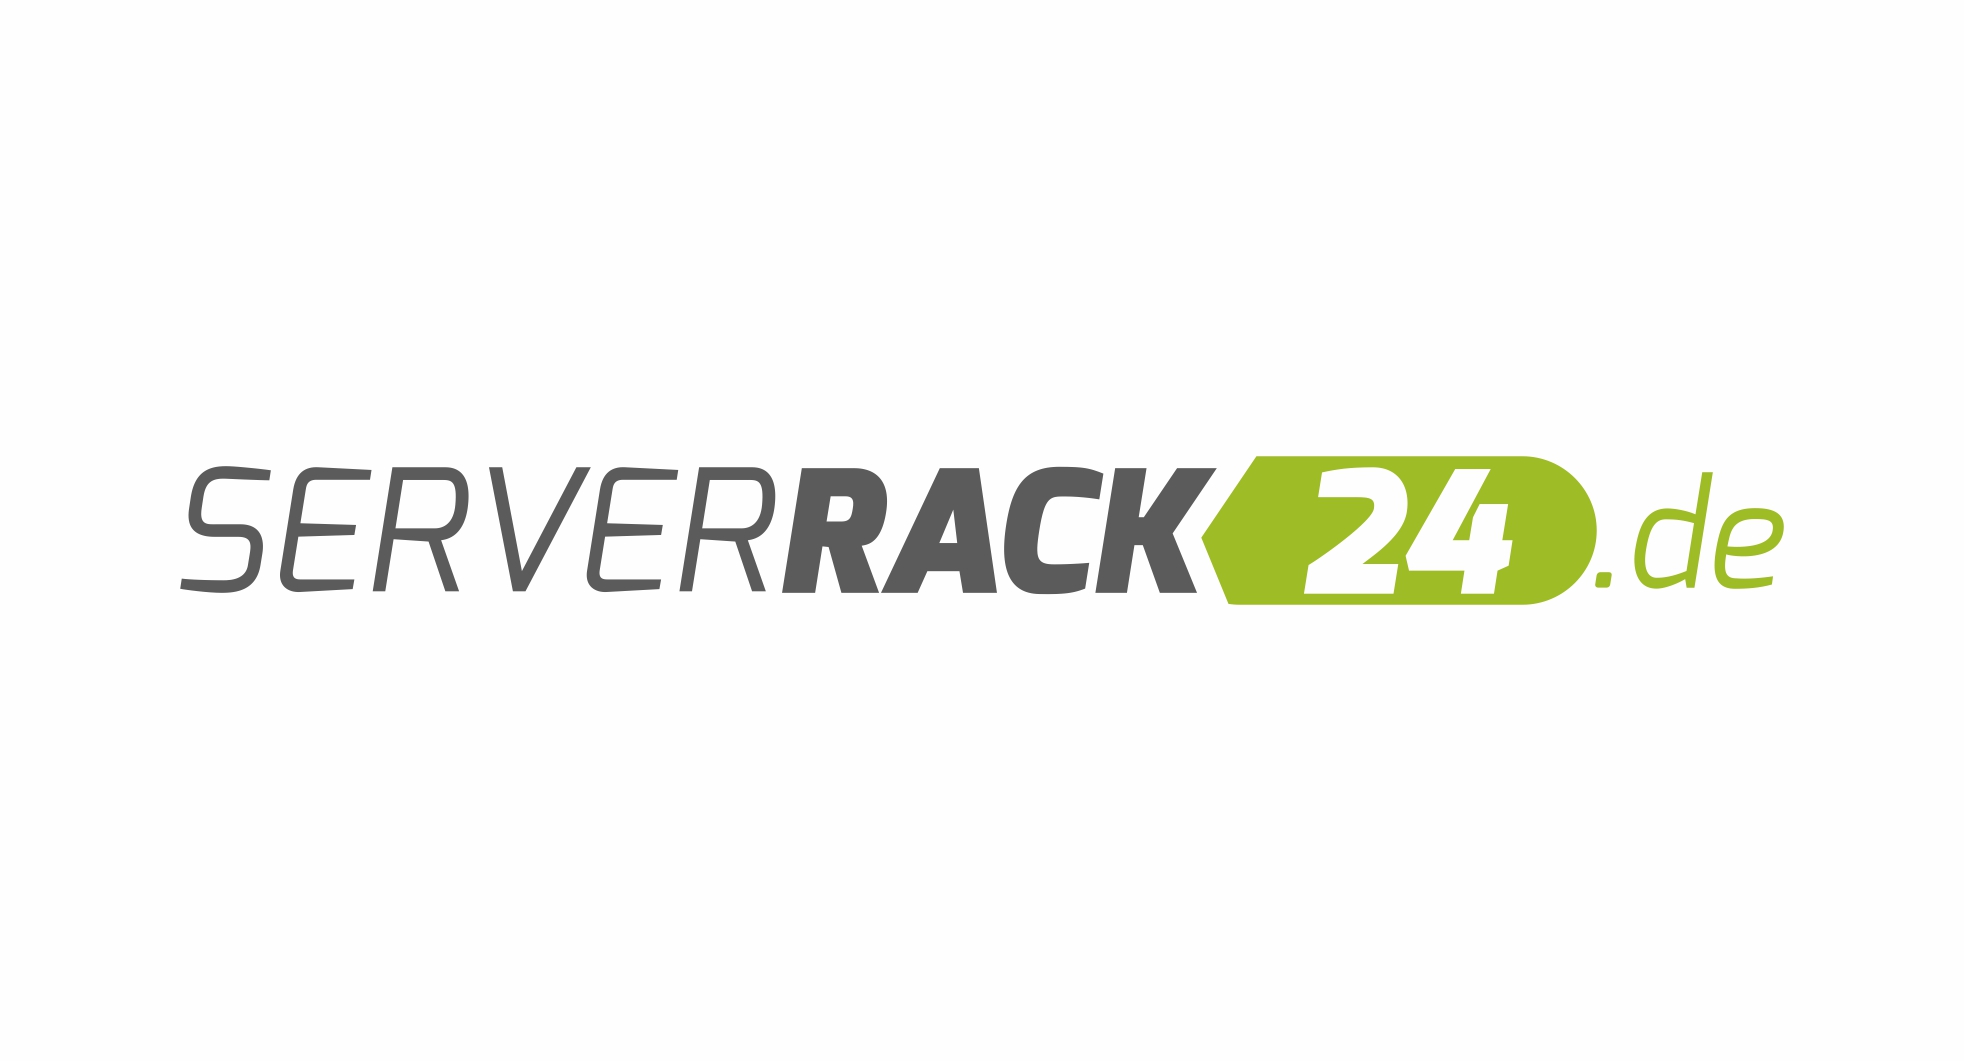 ServerRack24.de